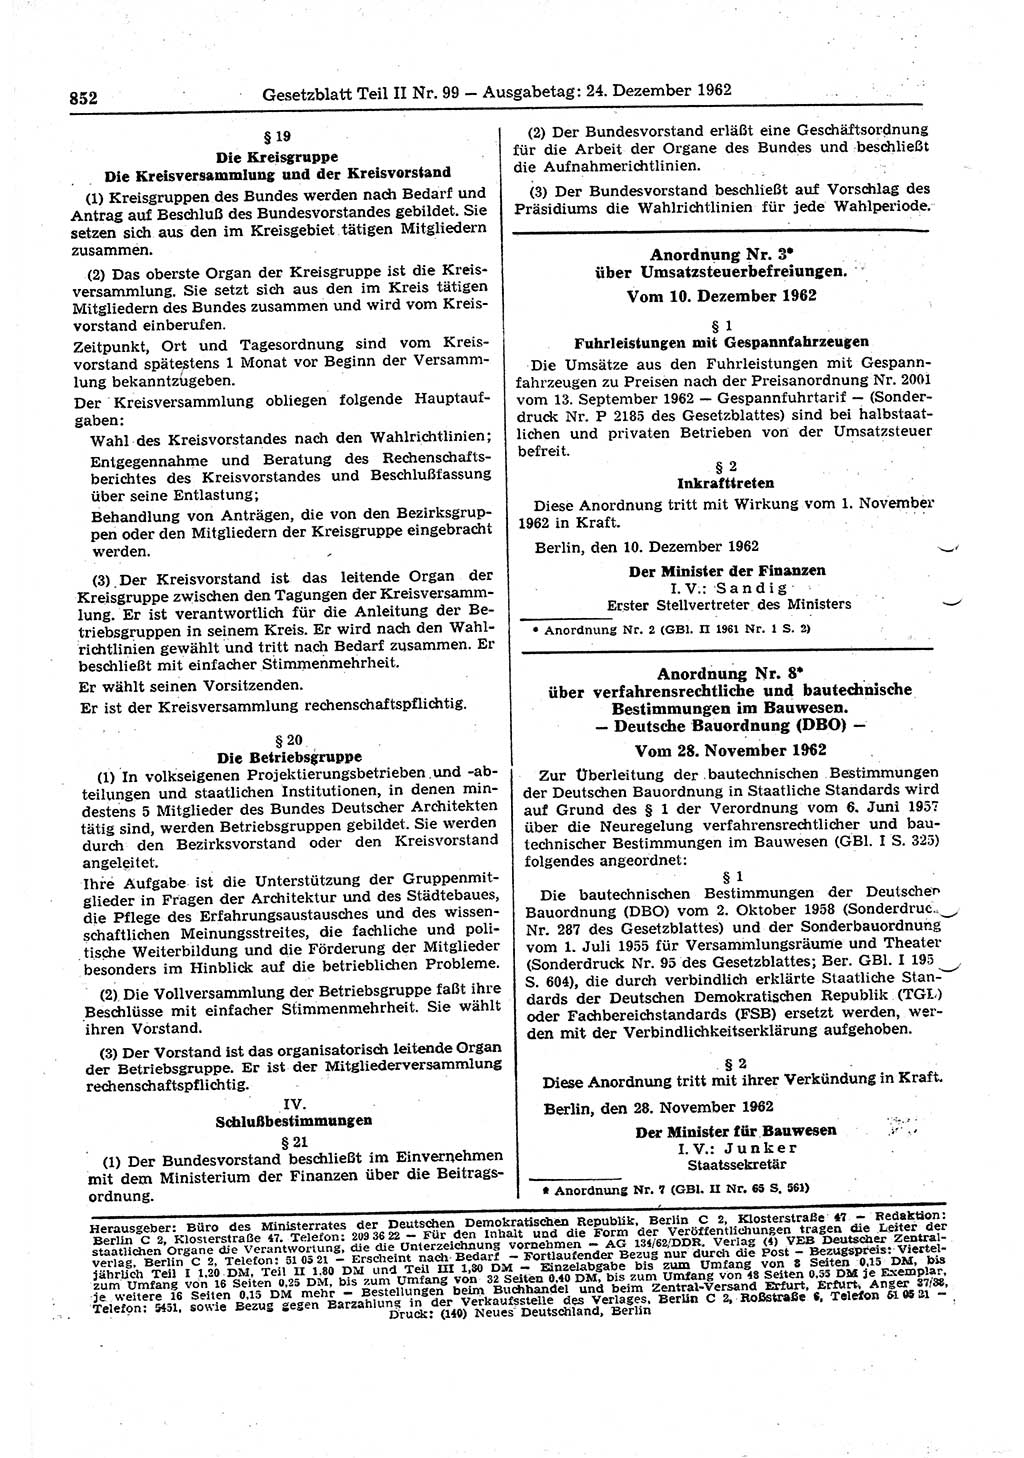 Gesetzblatt (GBl.) der Deutschen Demokratischen Republik (DDR) Teil ⅠⅠ 1962, Seite 852 (GBl. DDR ⅠⅠ 1962, S. 852)